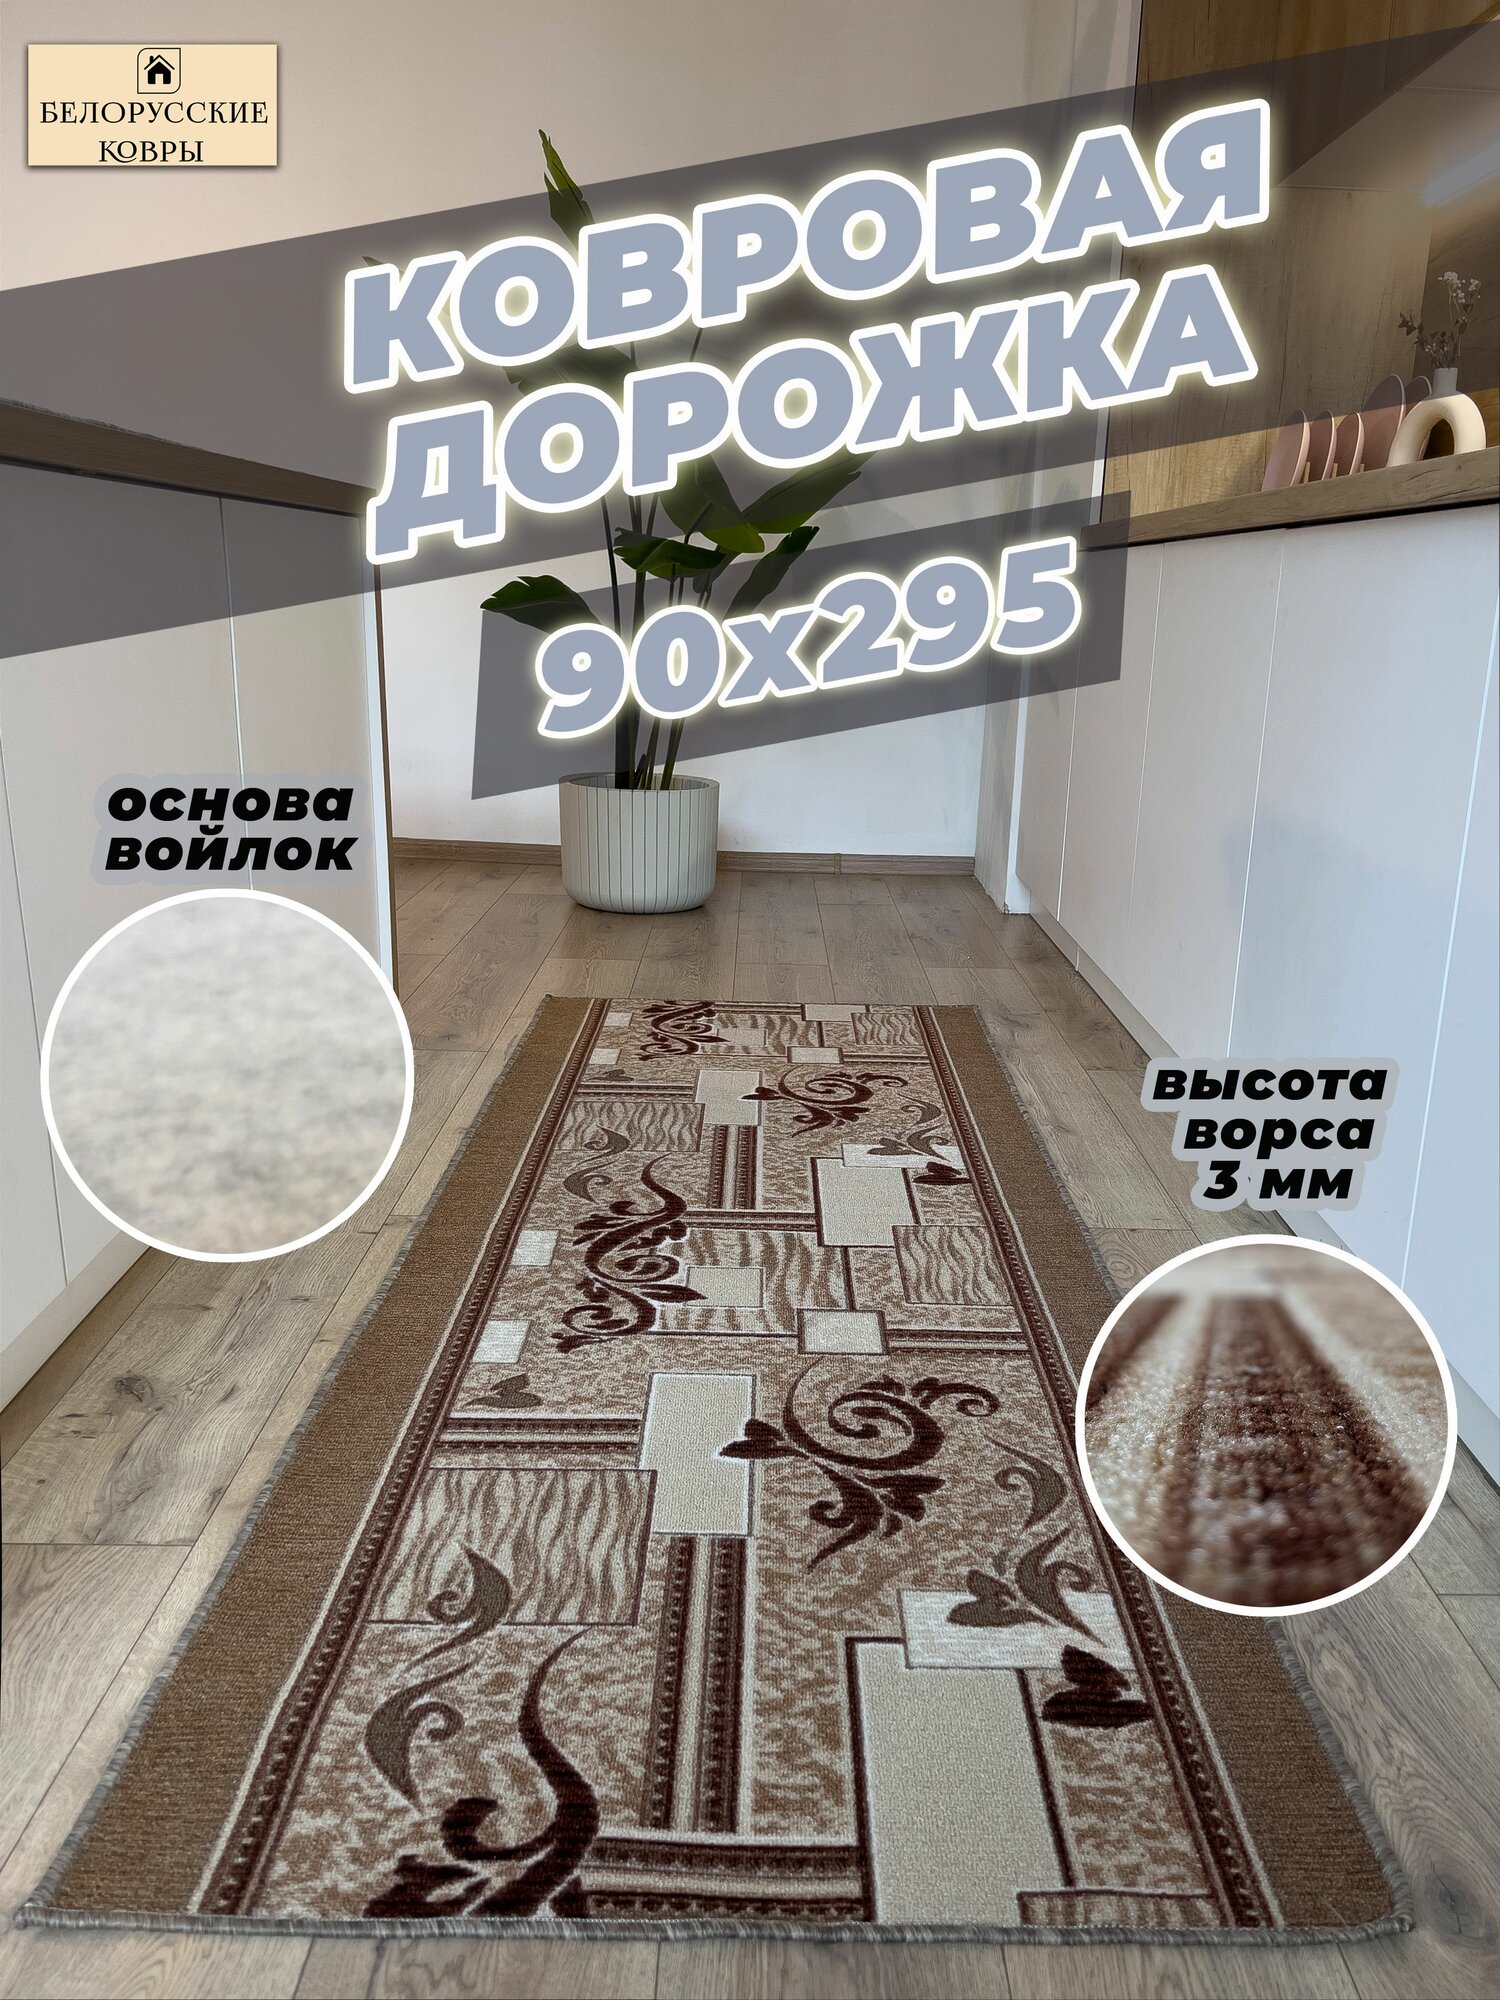 Белорусские ковры, ковровая дорожка 90х295см./0,9х2,95м.